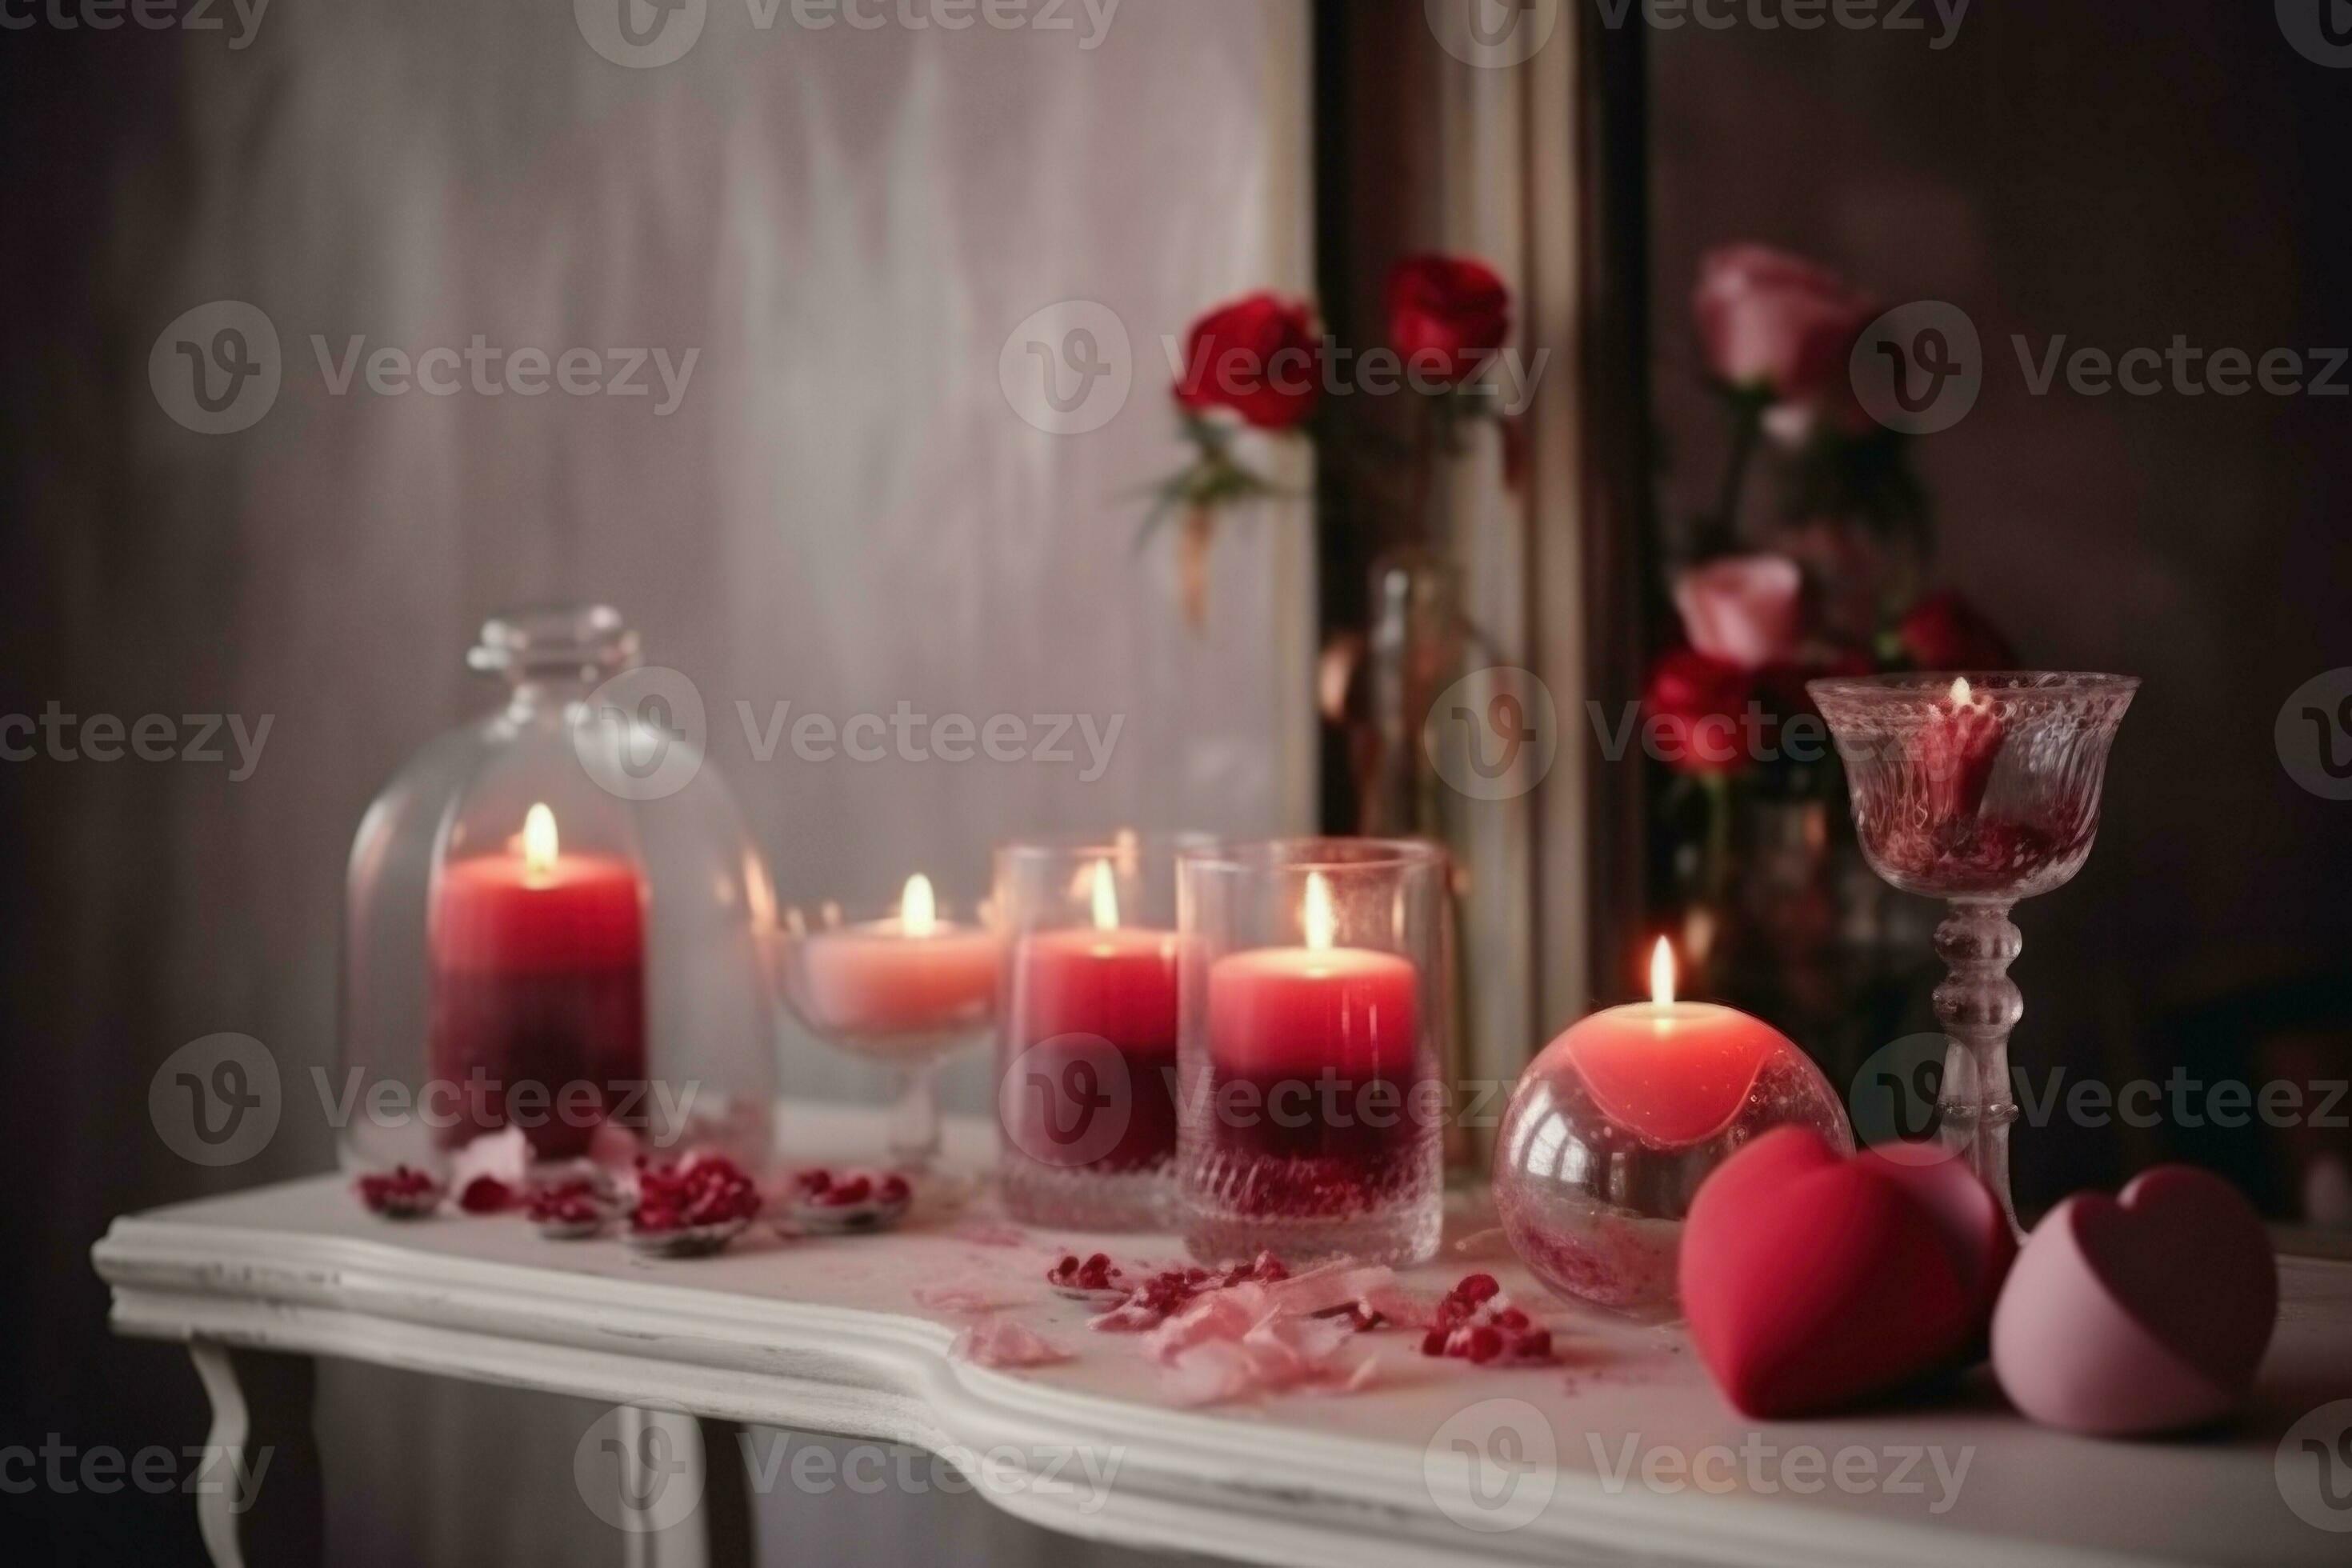 https://static.vecteezy.com/ti/photos-gratuite/p2/26382647-romantique-decor-bougies-chambre-produire-ai-photo.jpg